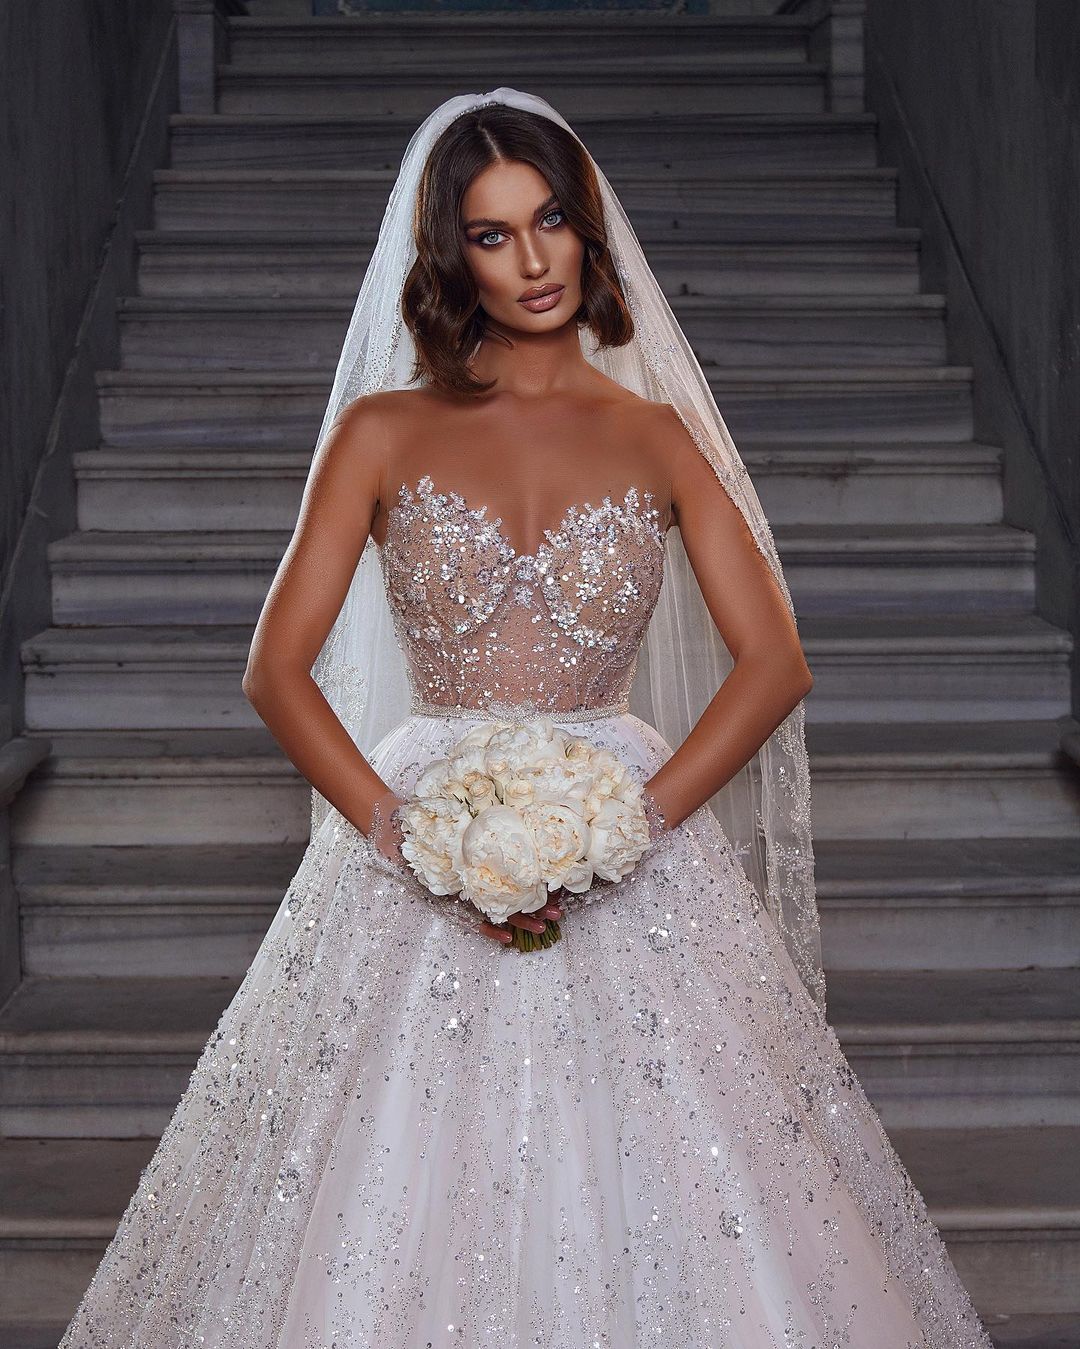 Finden Sie Elegante Brautkleider Glitzer online bei babyonlinedress.de. Hochzeitskleider A Linie Spitze für Sie maßgeschneidert kaufen.